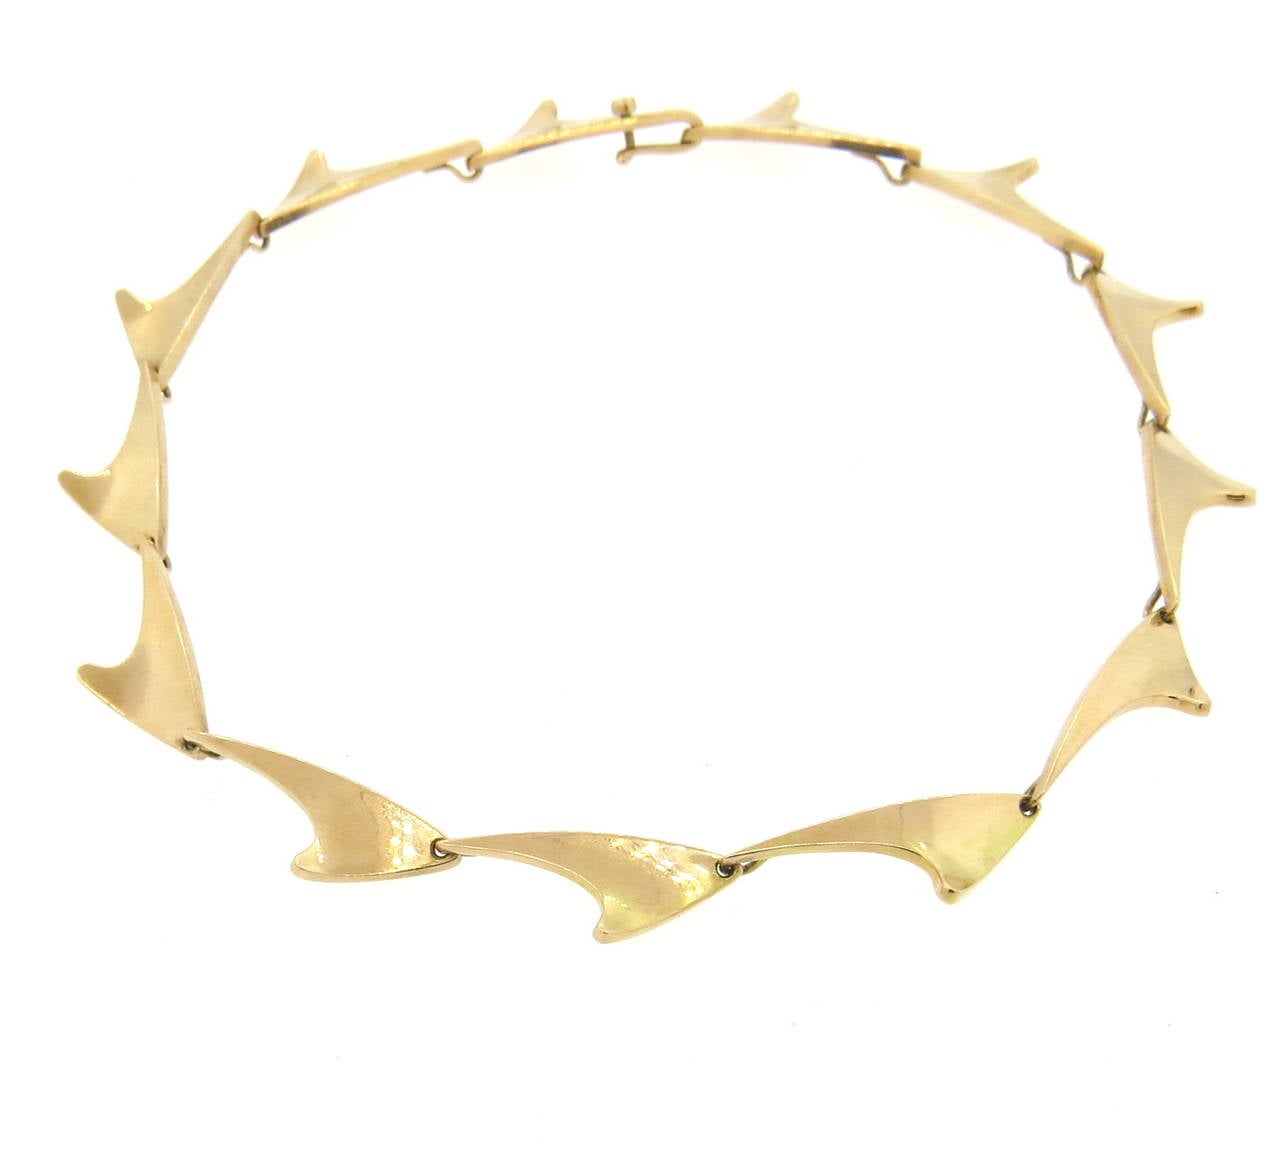 Modernist 14k gold necklace by Bent Knudsen. Measures 15